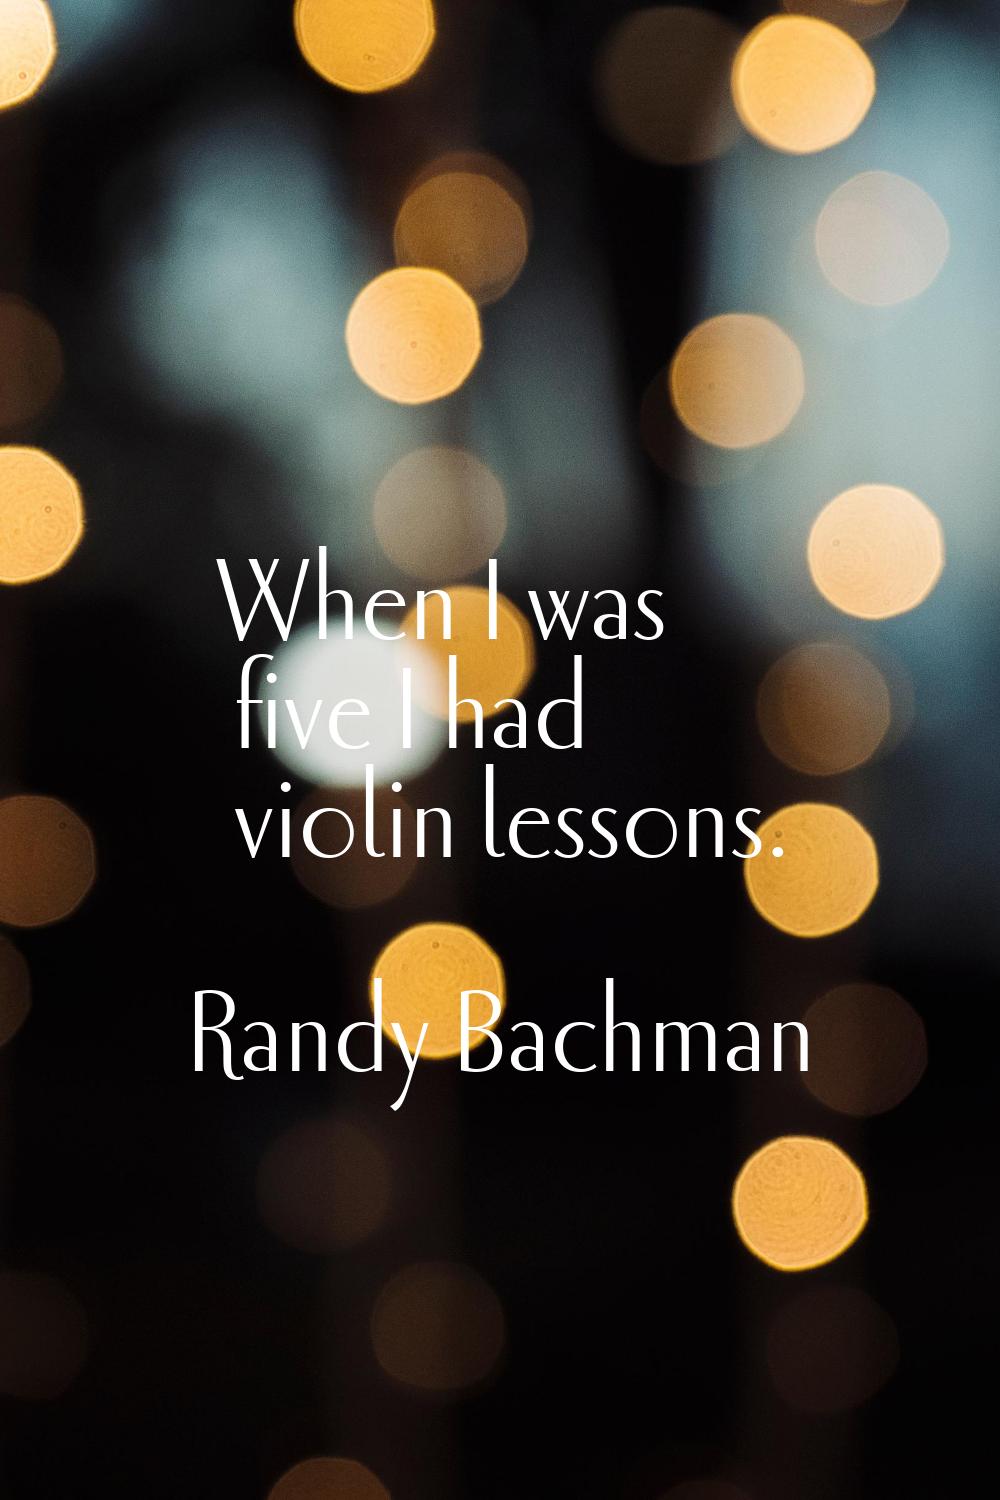 When I was five I had violin lessons.